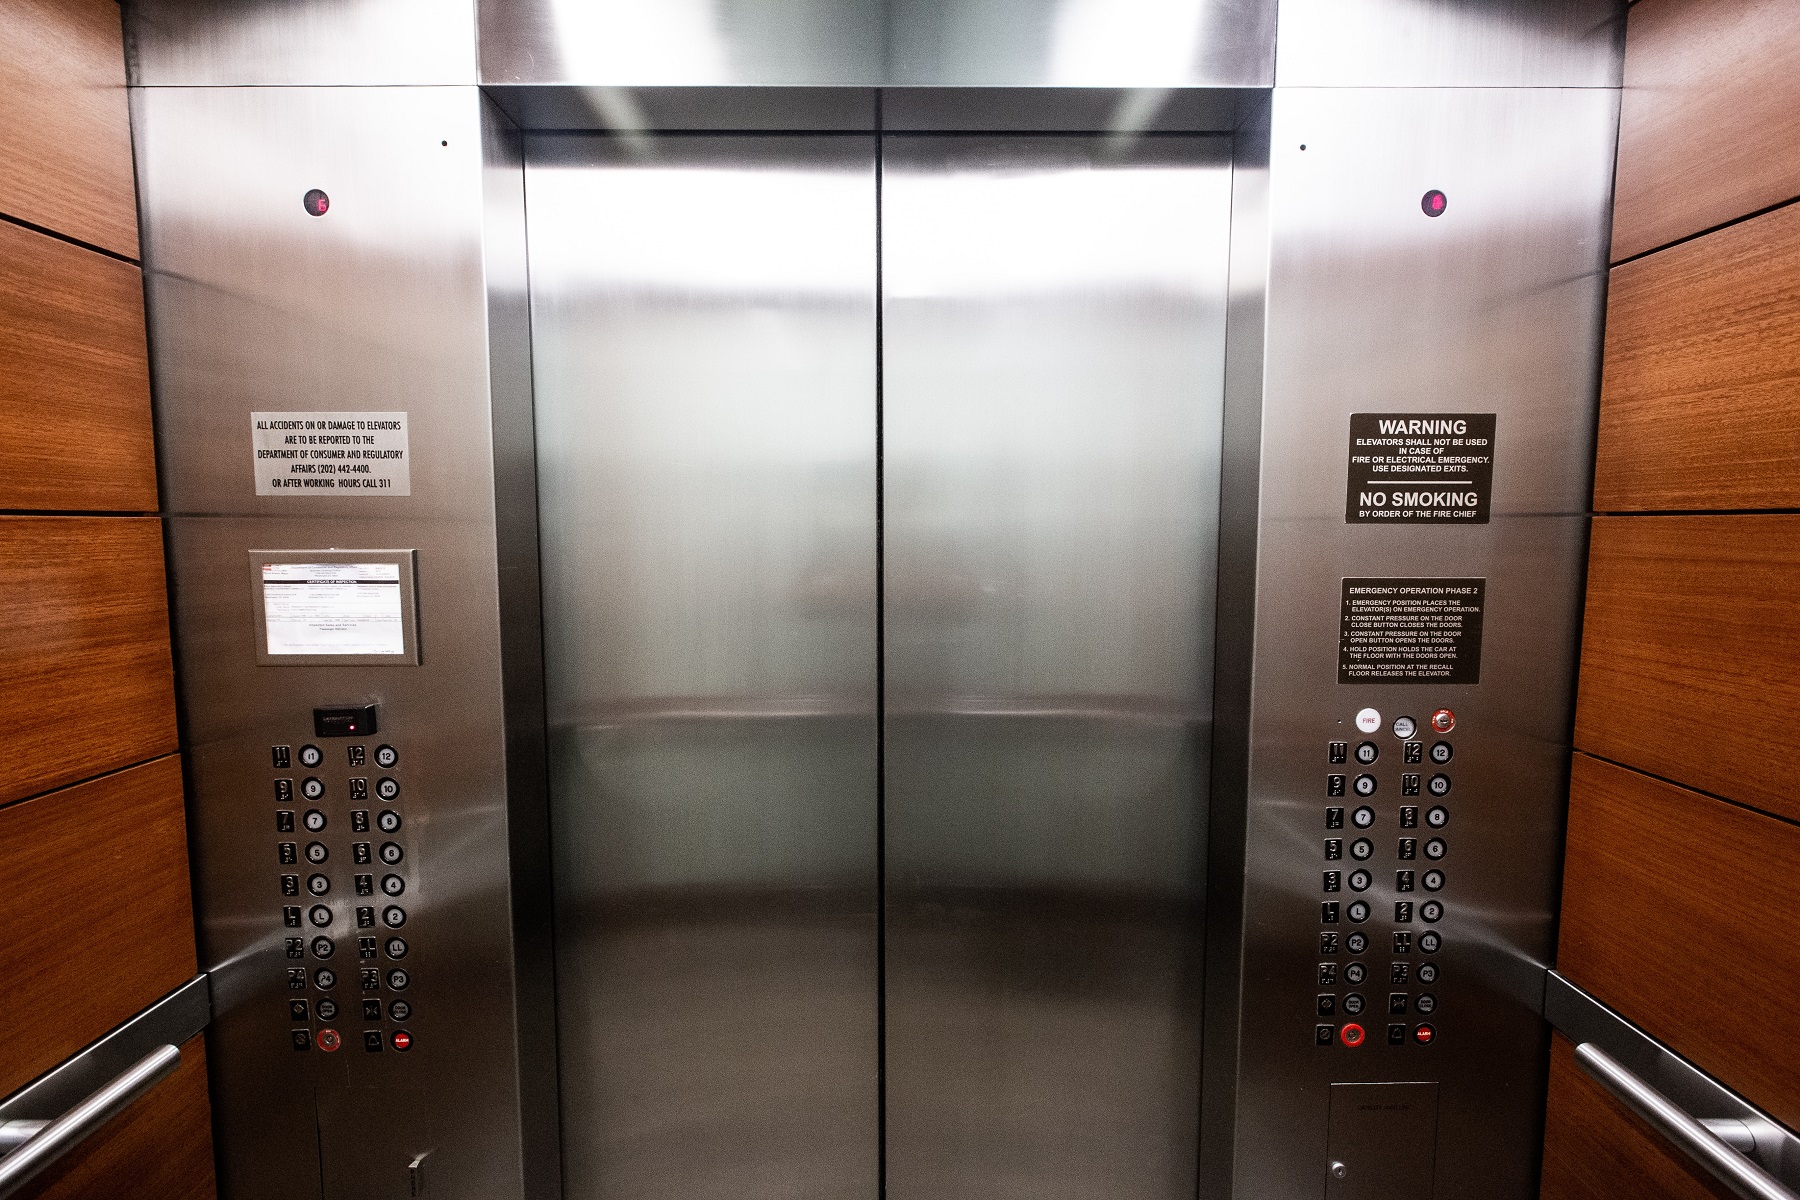 ascenseur